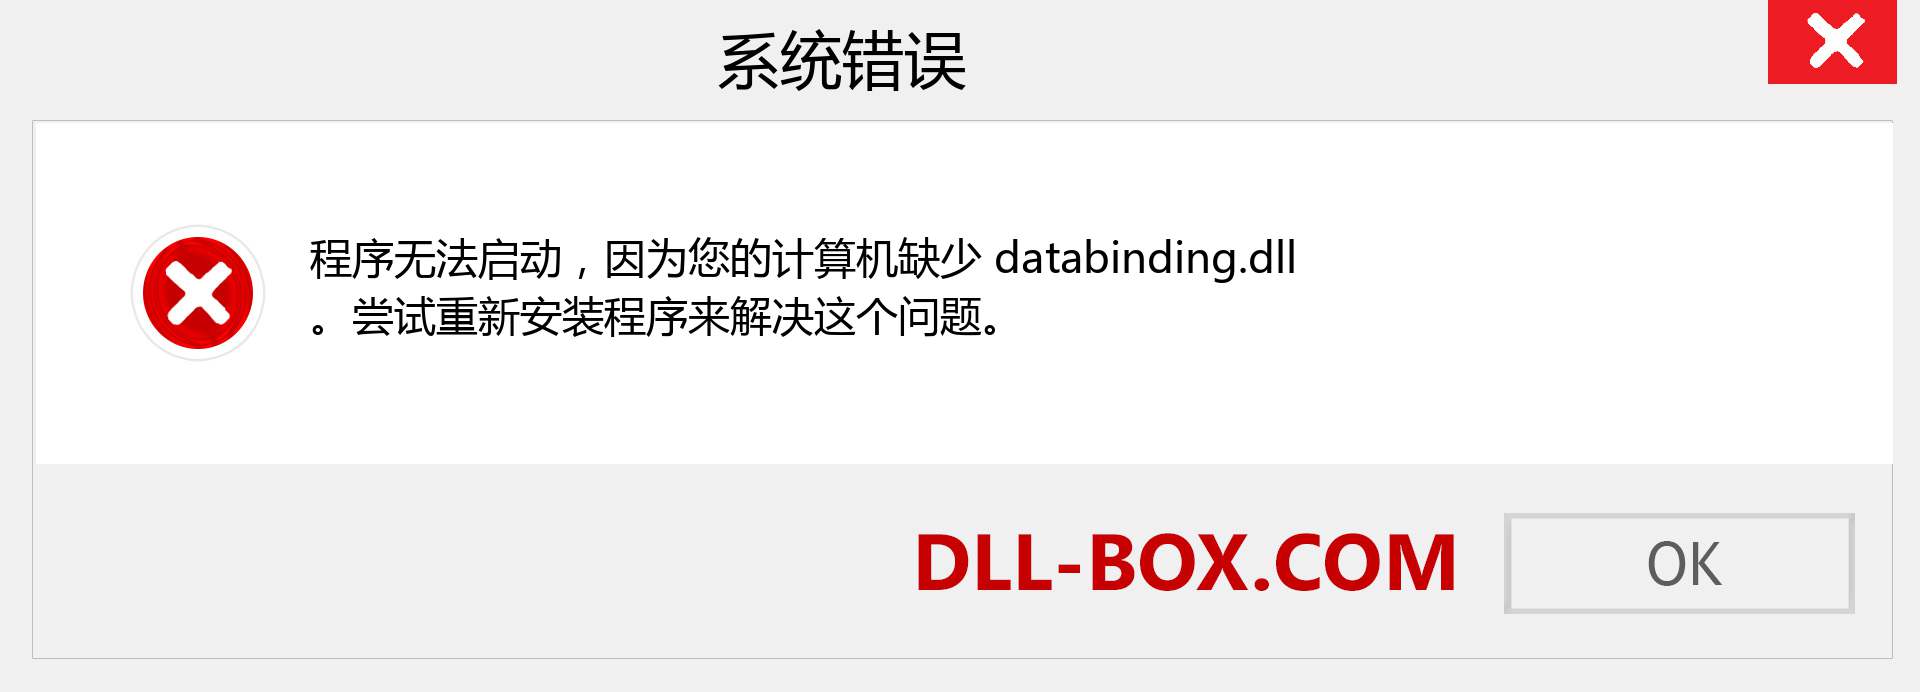 databinding.dll 文件丢失？。 适用于 Windows 7、8、10 的下载 - 修复 Windows、照片、图像上的 databinding dll 丢失错误